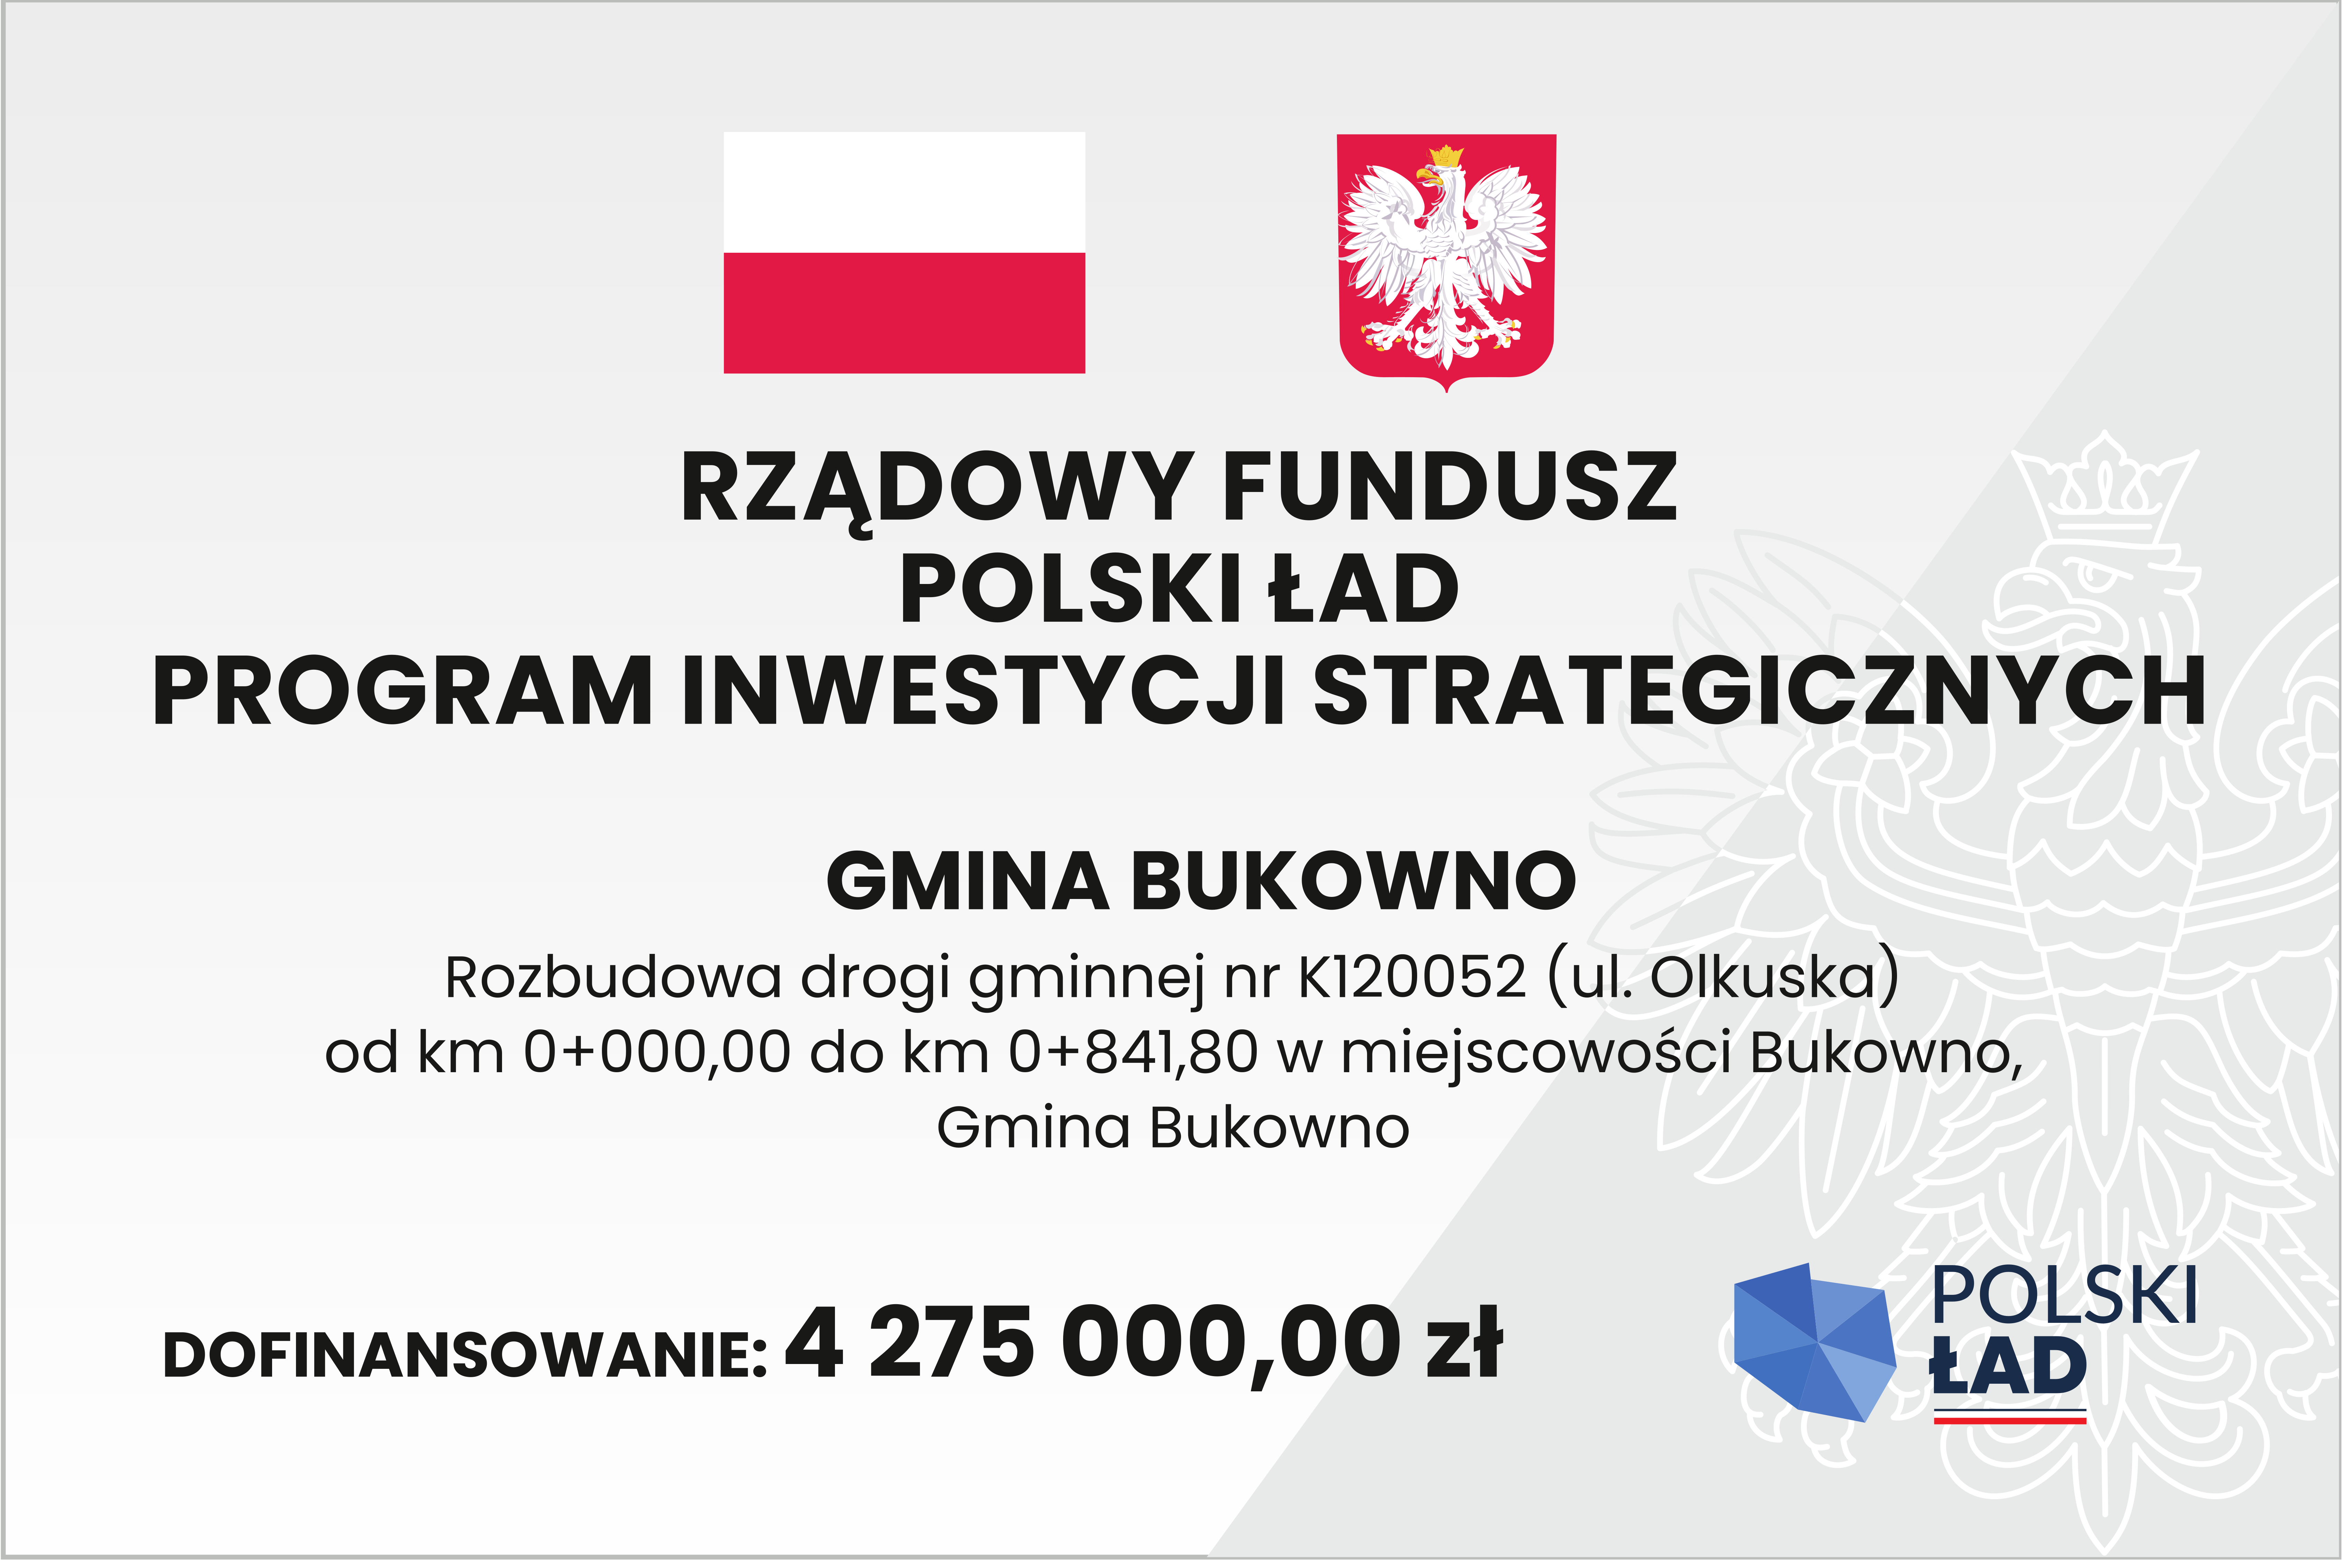 Rozbudowa drogi gminnej nr K120052 (ul. Olkuska) od km 0+000,00 do km 0+841,80 w miejscowości Bukowno, Gmina Bukowno